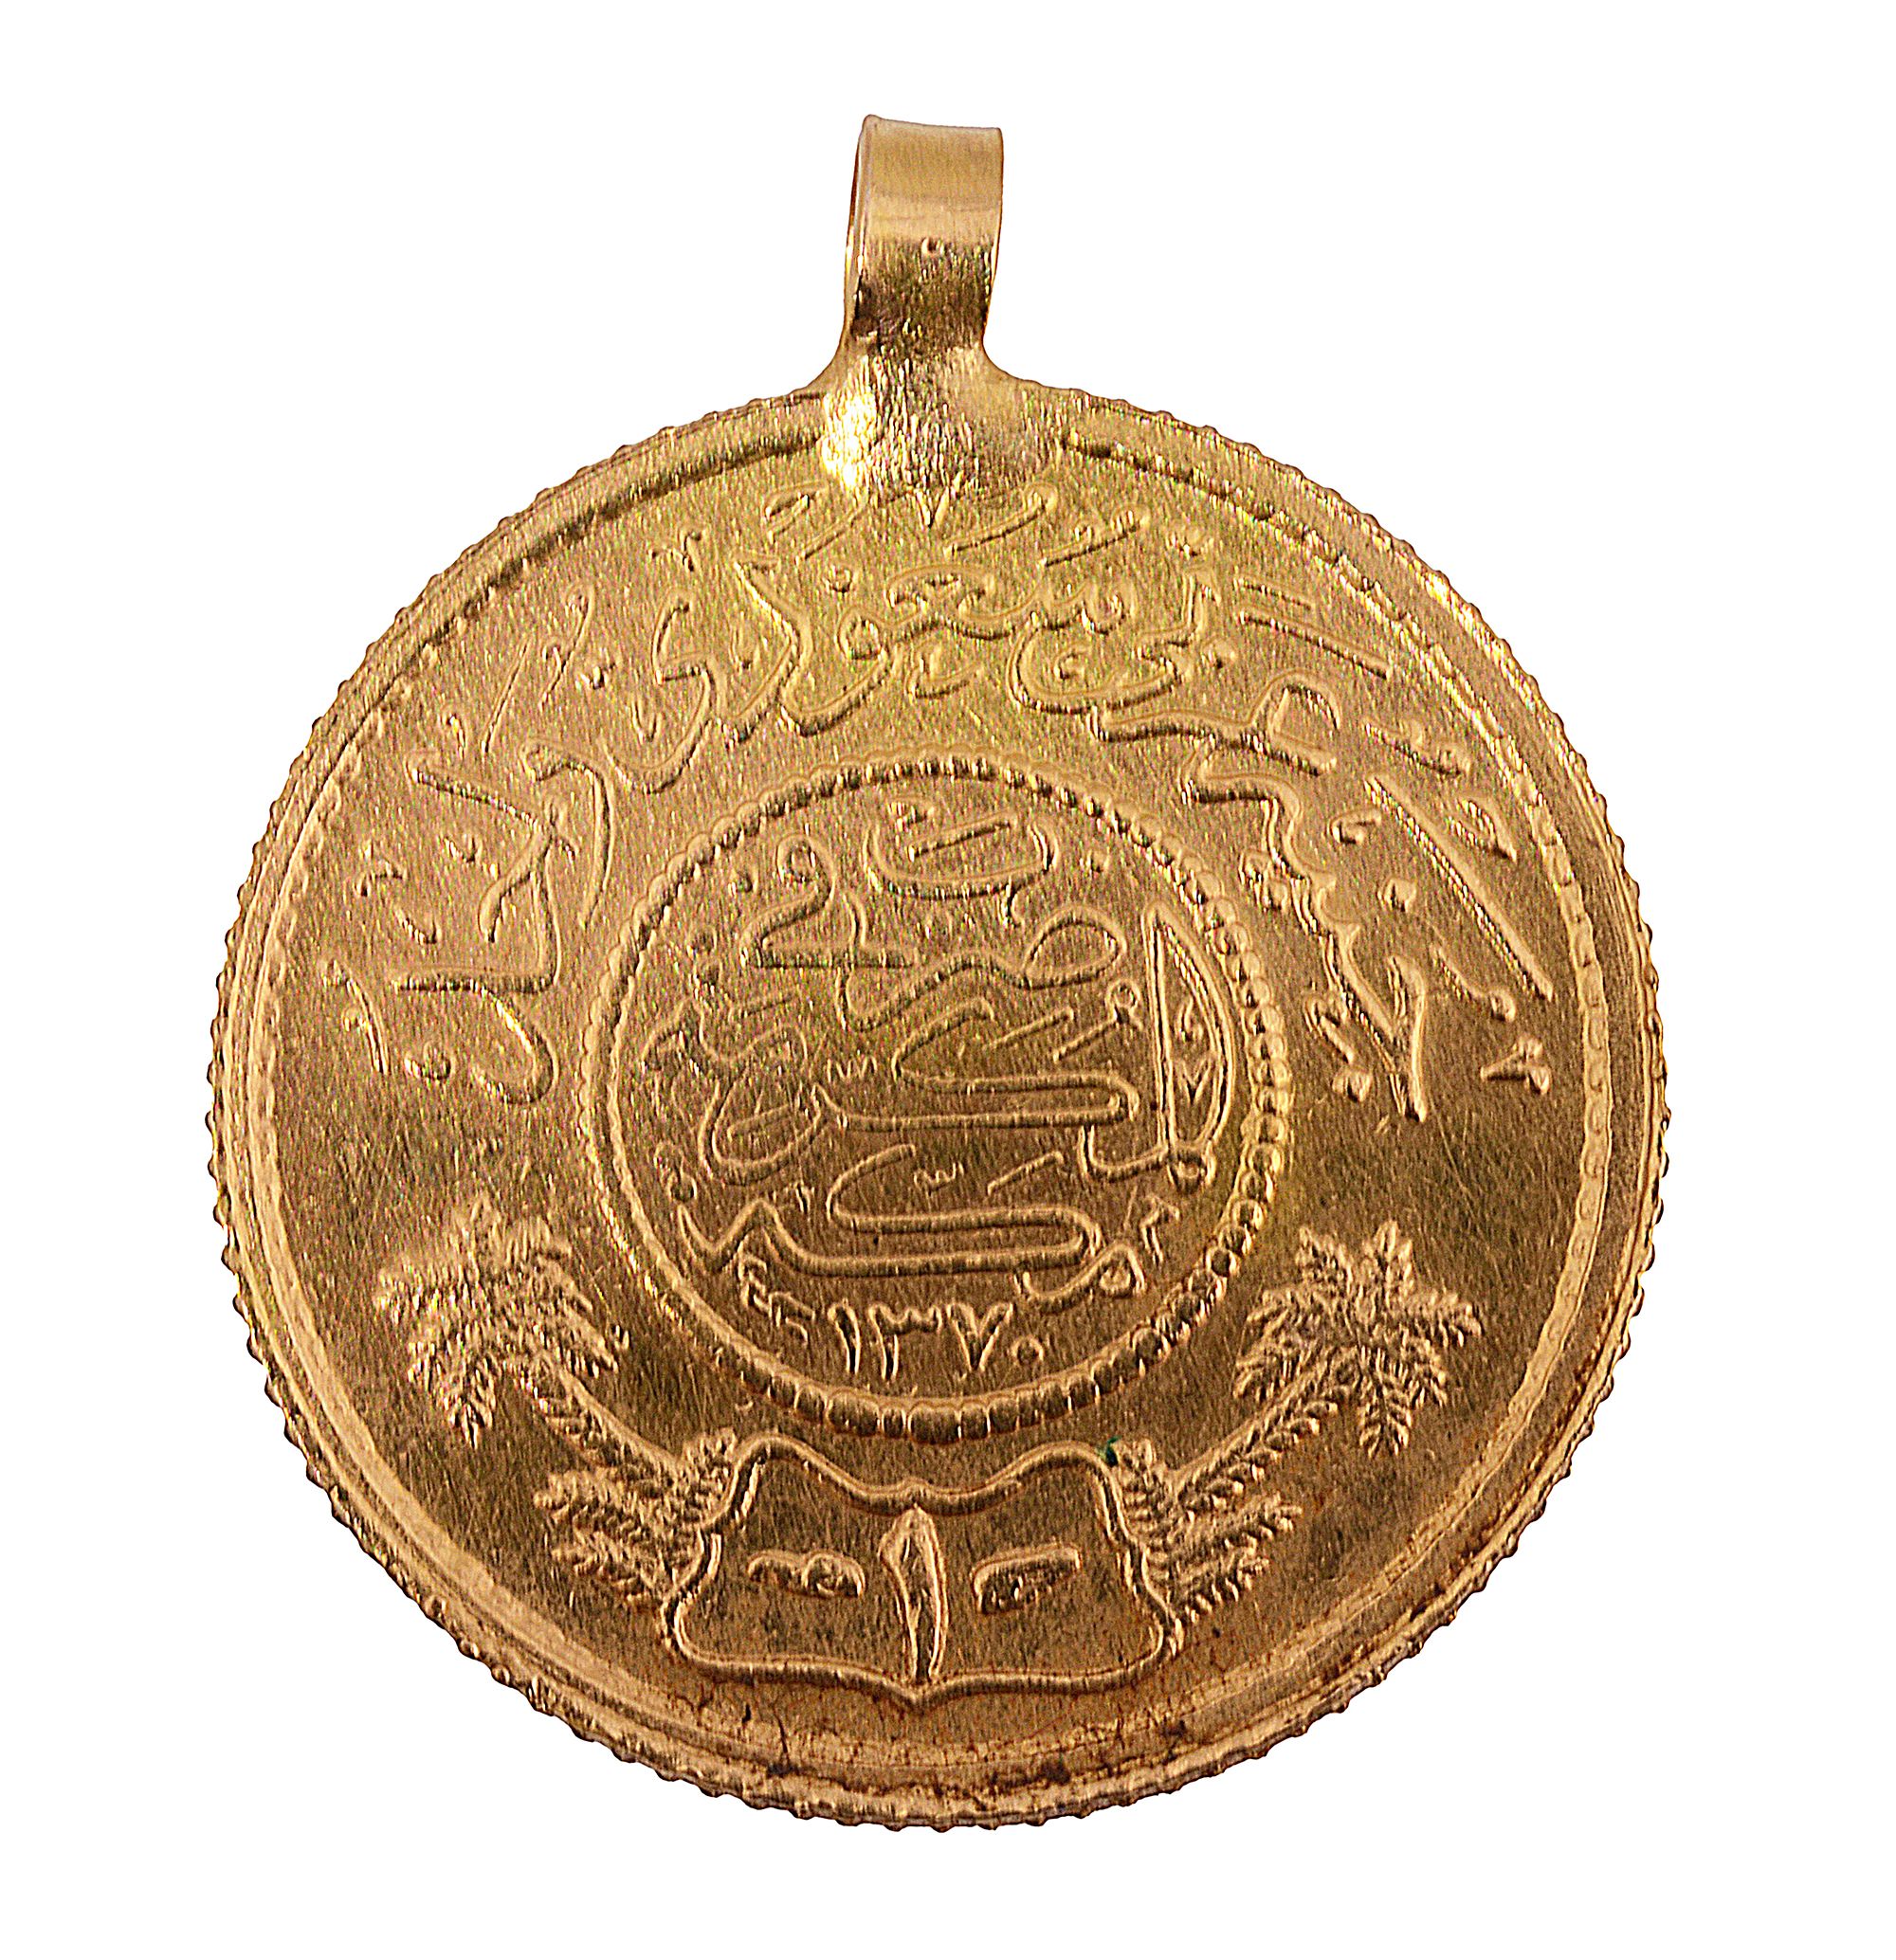 A Saudi Arabia 1 guinea, 1950/1 gold coin pendant - Image 2 of 2